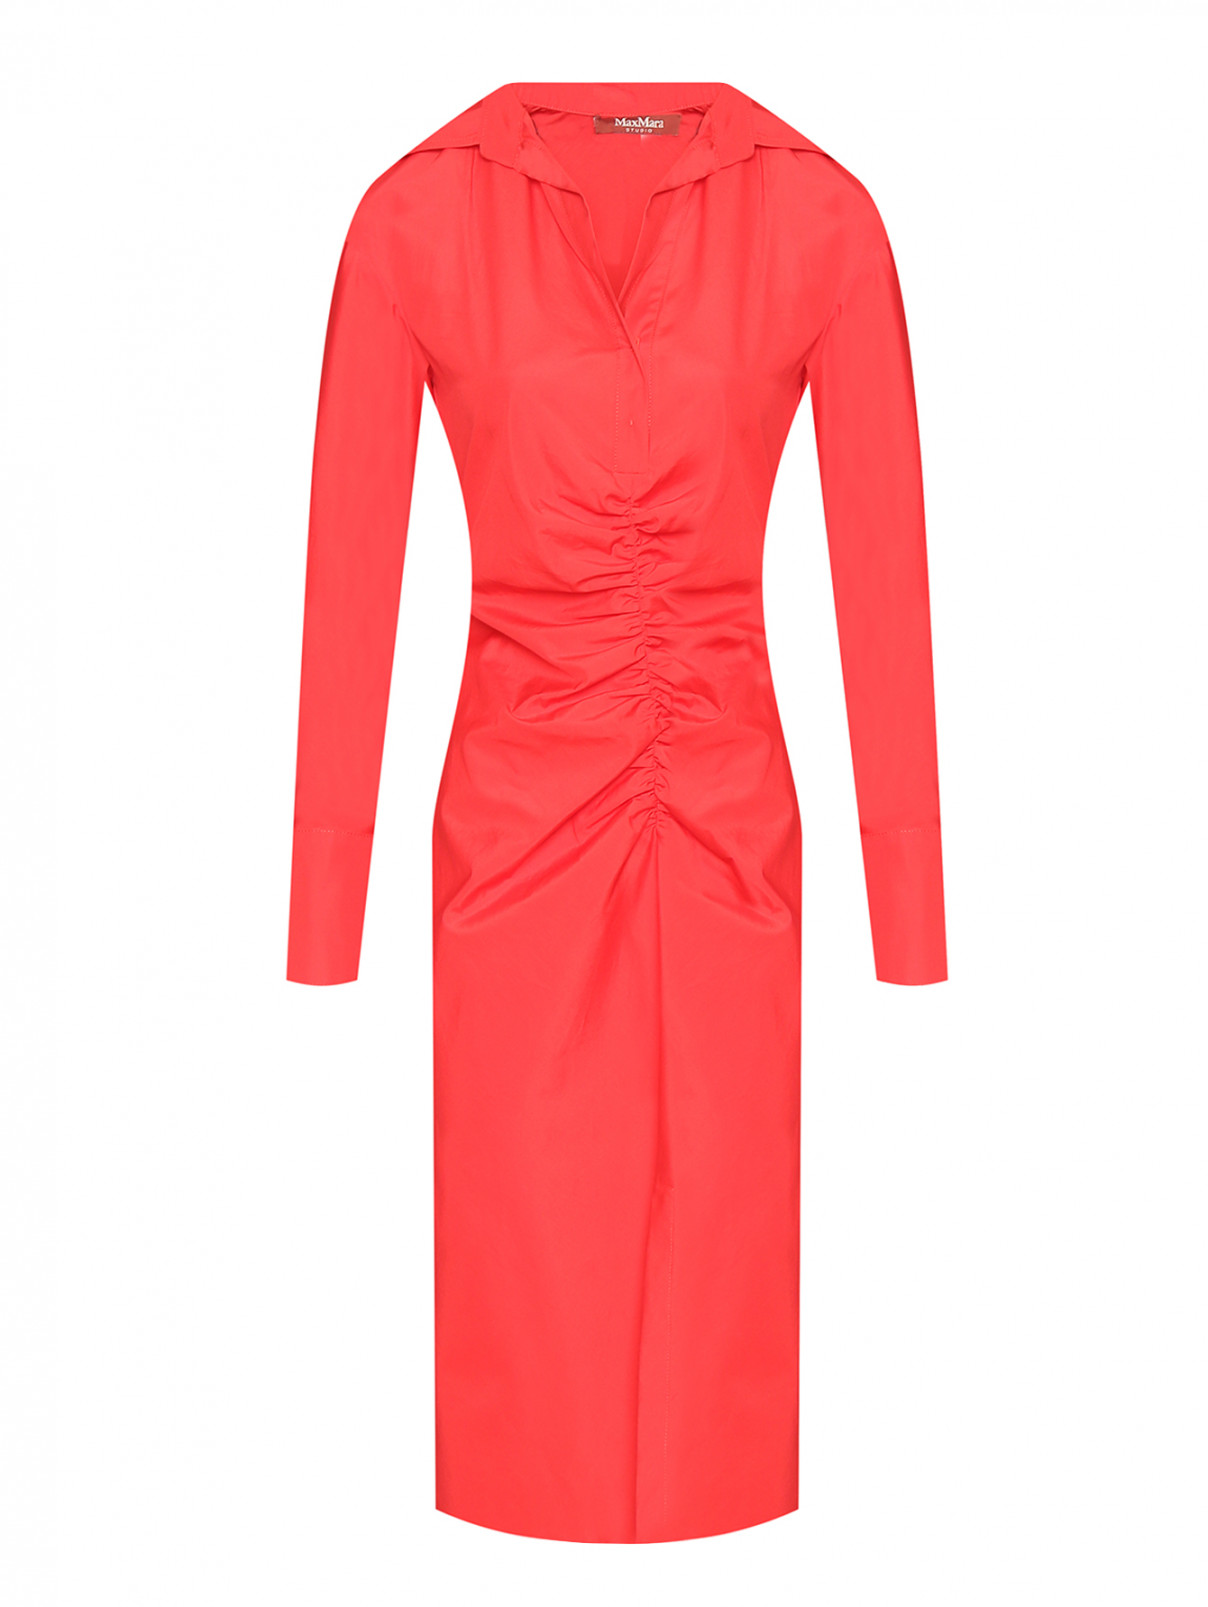 Хлопковое платье со сборкой Max Mara  –  Общий вид  – Цвет:  Красный